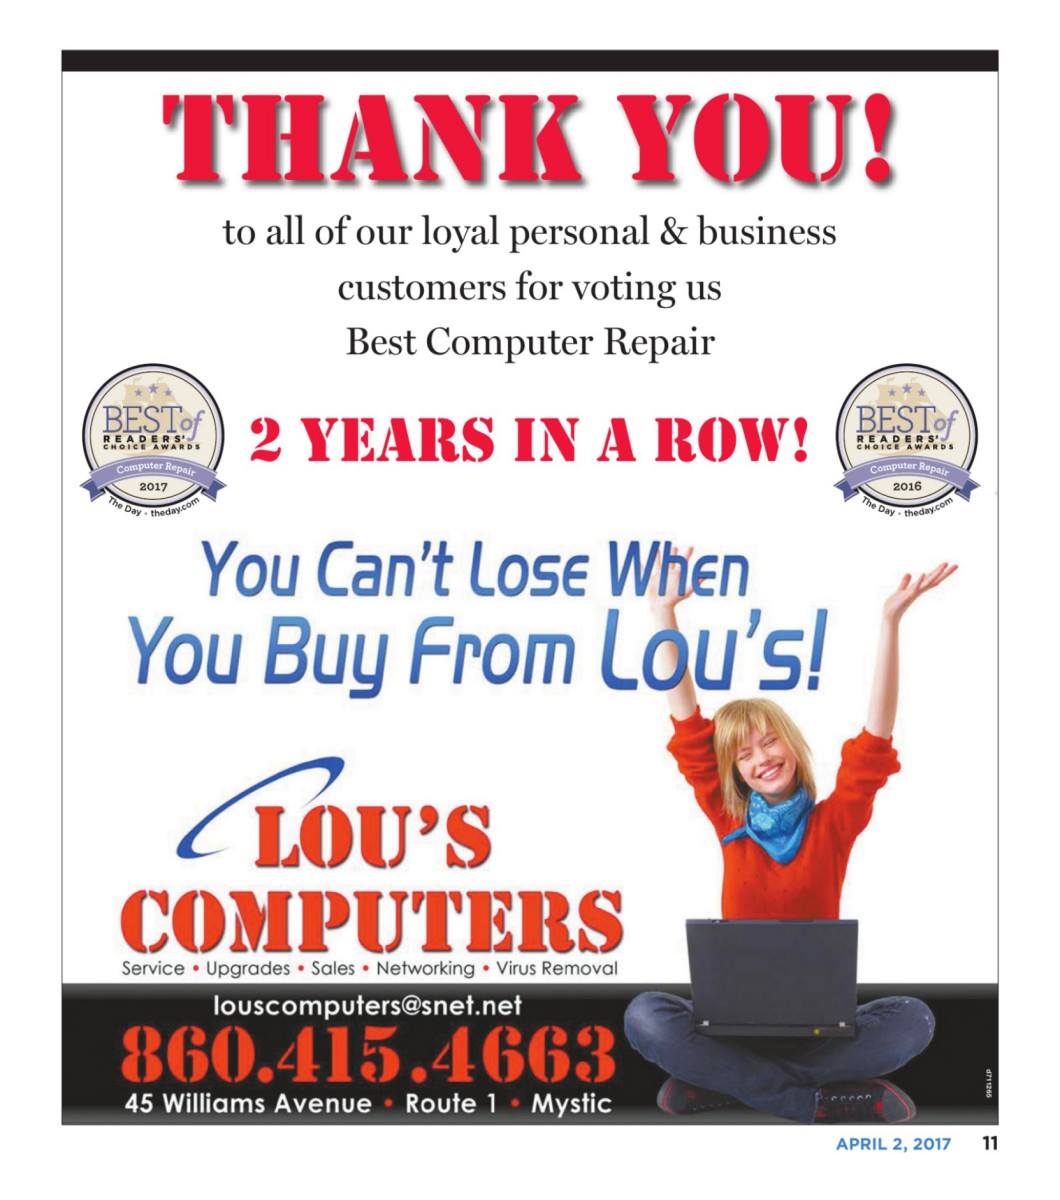 Lou's Computers LLC